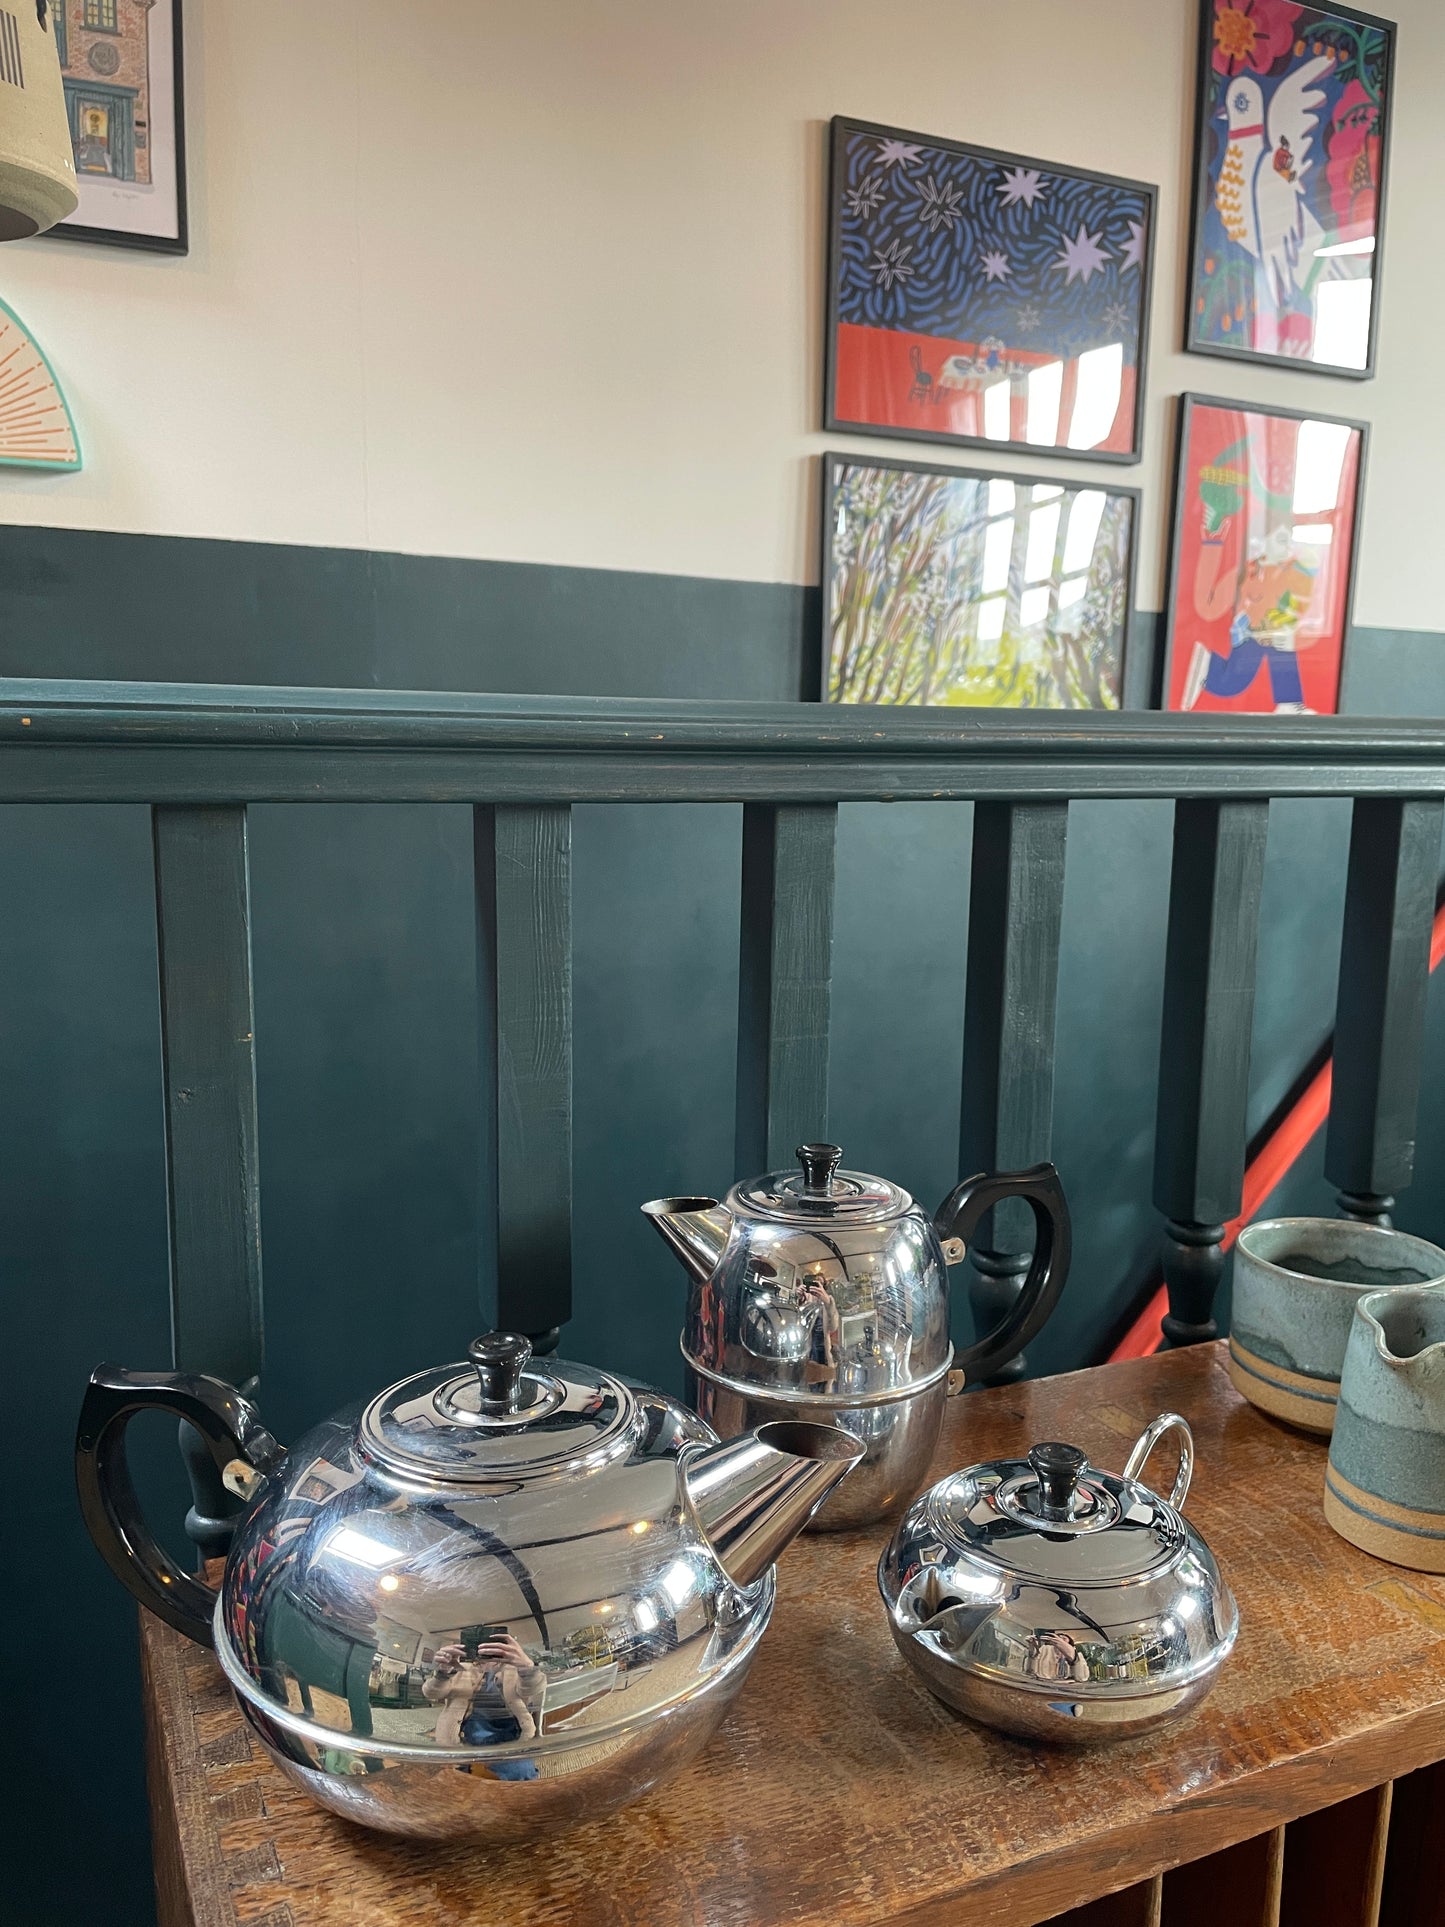 Britdis Tea Pot - 6 cup - Made in NZ